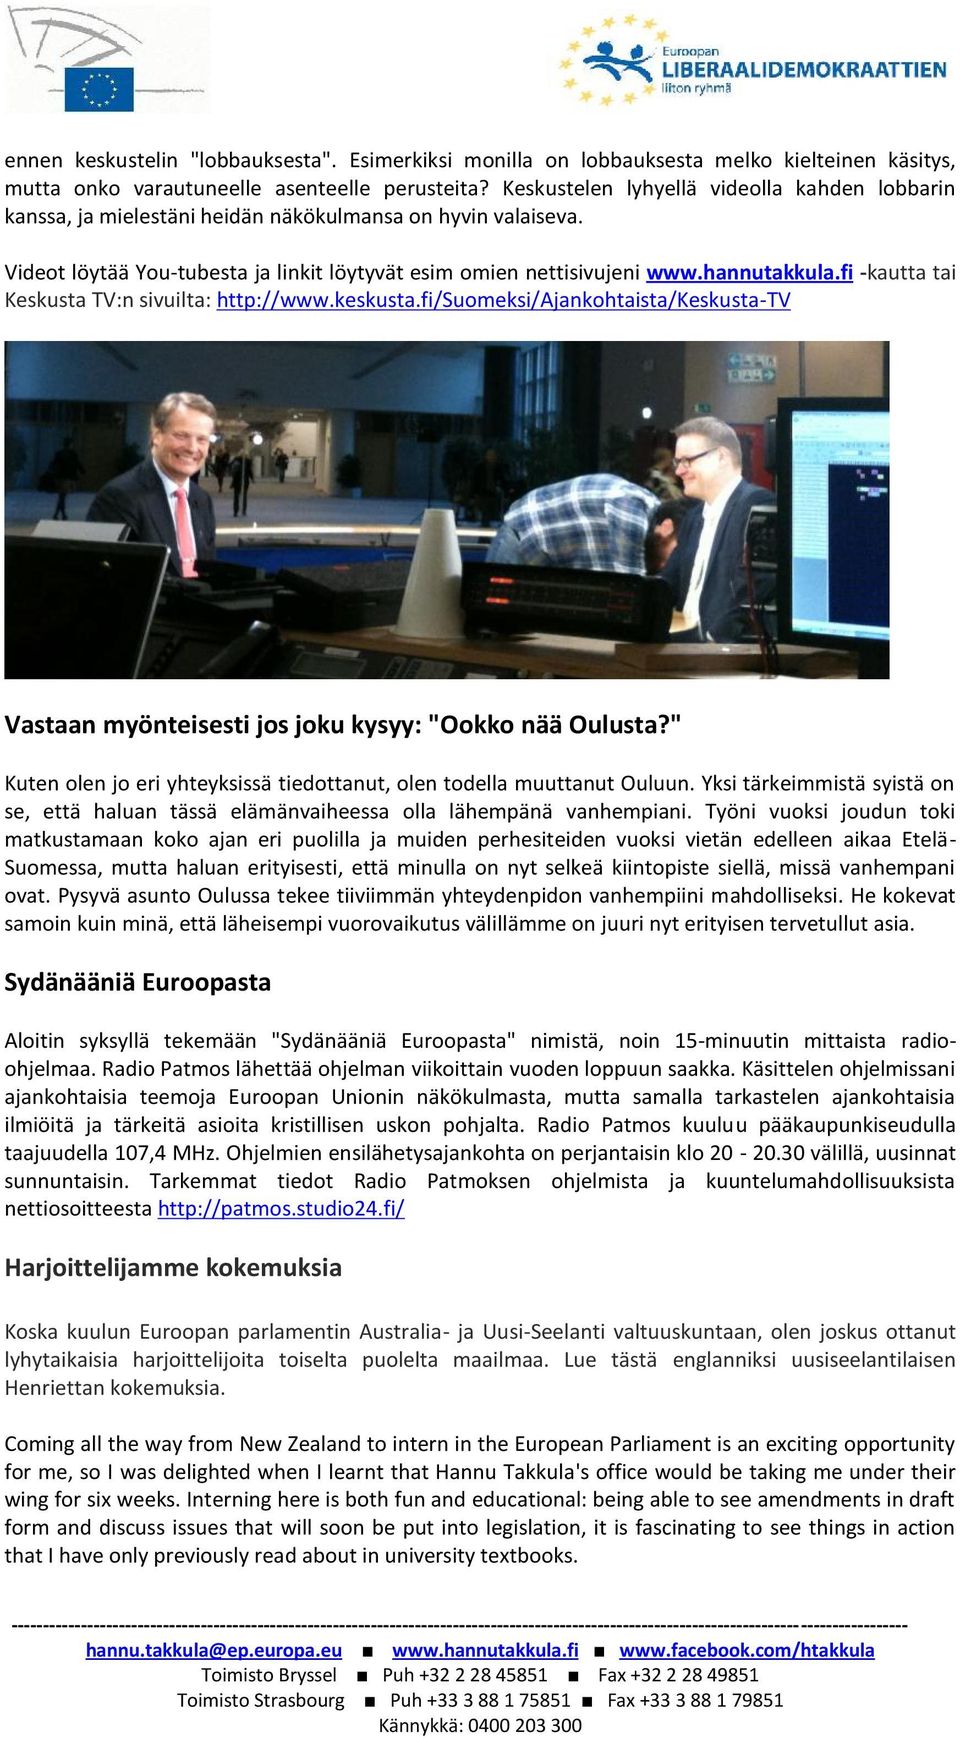 fi -kautta tai Keskusta TV:n sivuilta: http://www.keskusta.fi/suomeksi/ajankohtaista/keskusta-tv Vastaan myönteisesti jos joku kysyy: "Ookko nää Oulusta?